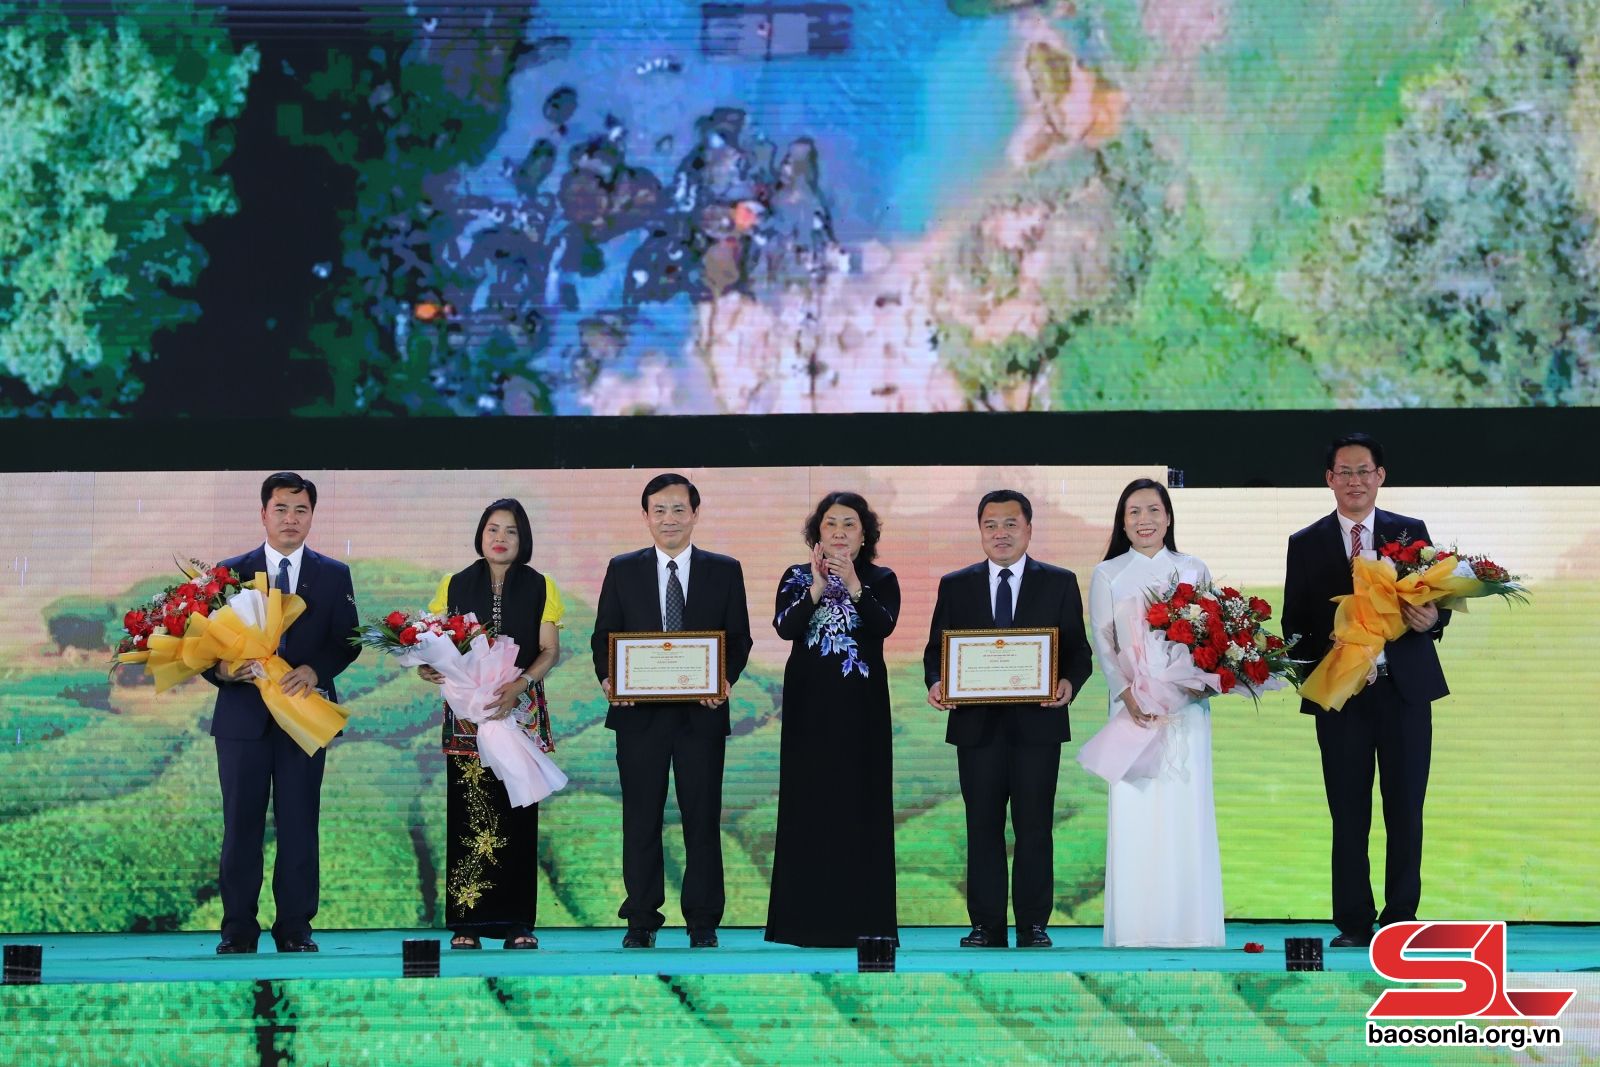 Tập thể Thường trực Huyện ủy Mộc Châu và Vân Hồ nhận Bằng khen của Chủ tịch UBND tỉnh.

